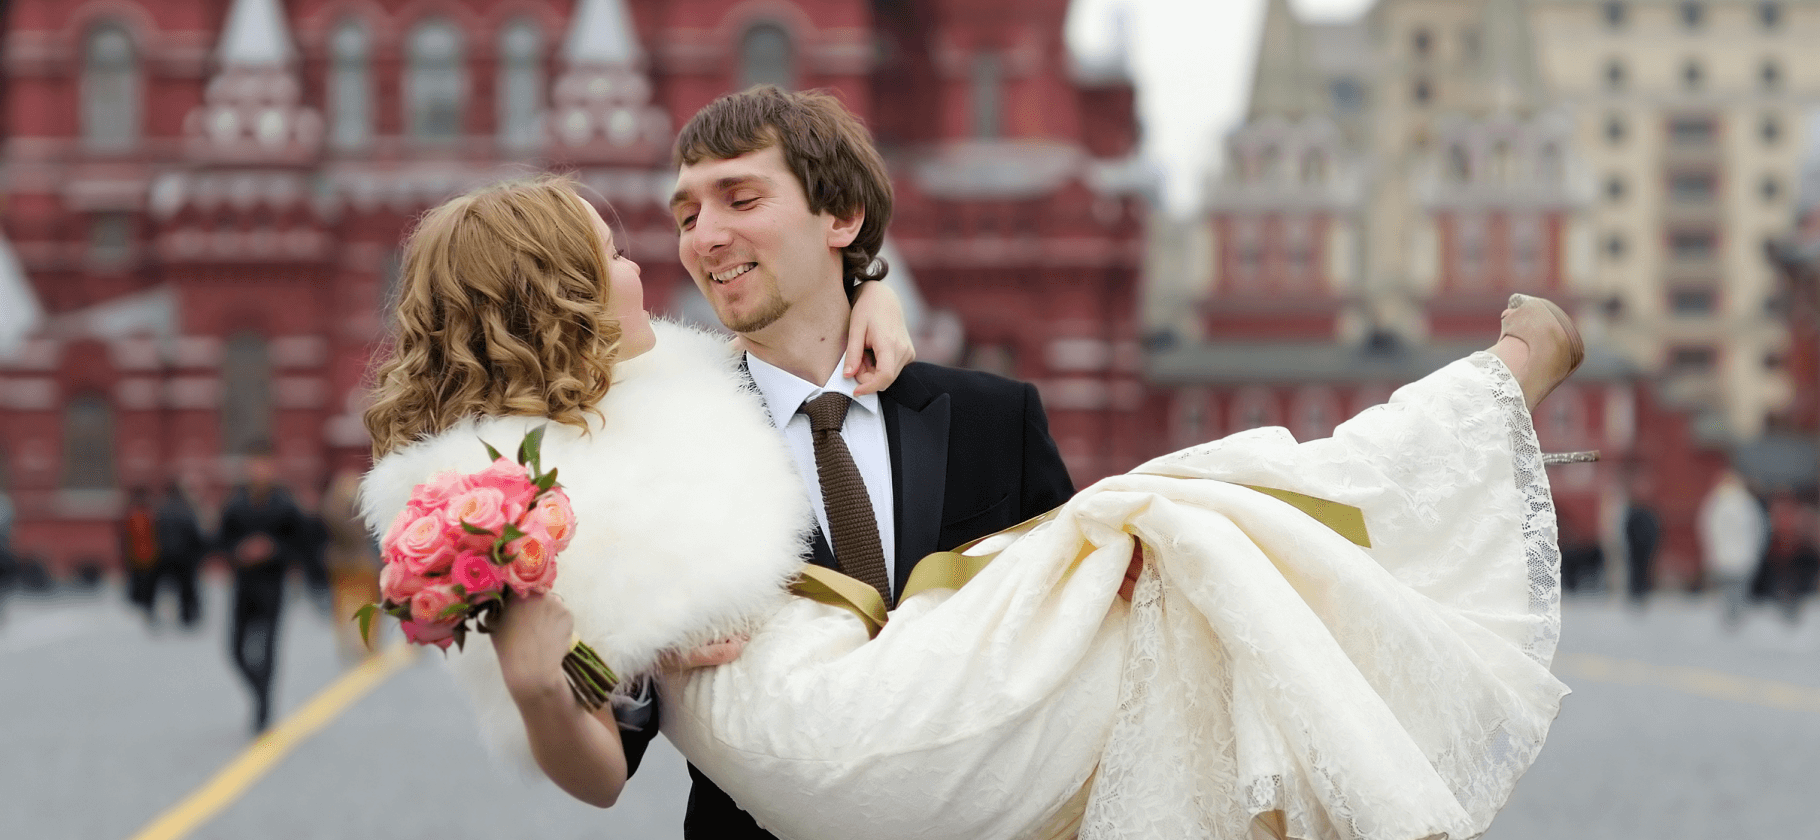 11 госпошлин, которые платят в браке